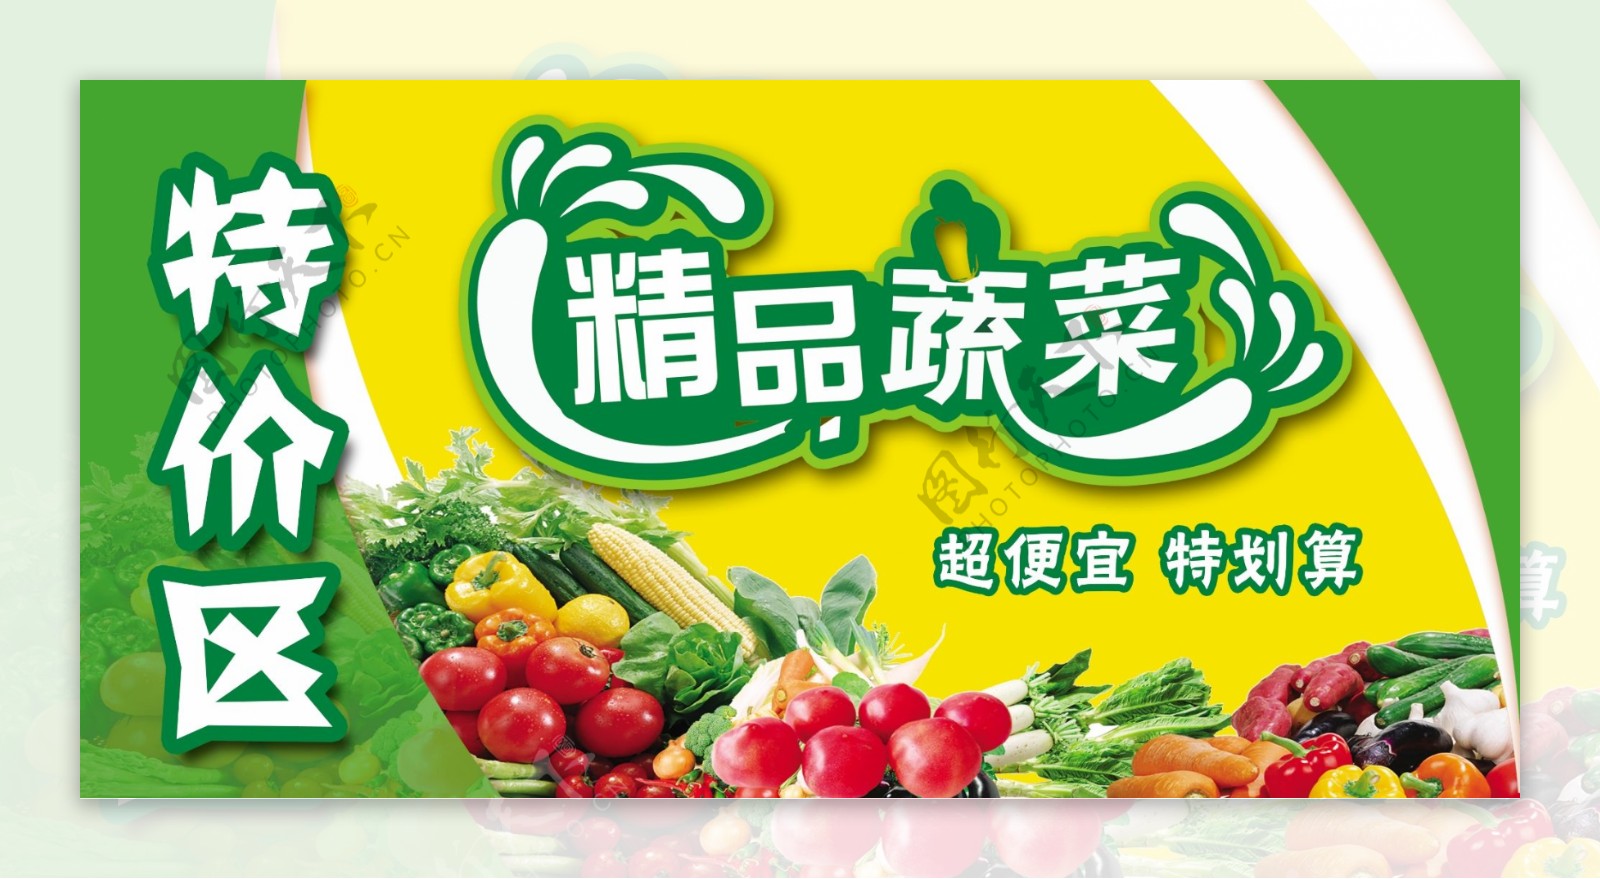 精品蔬菜特价区广告牌图片